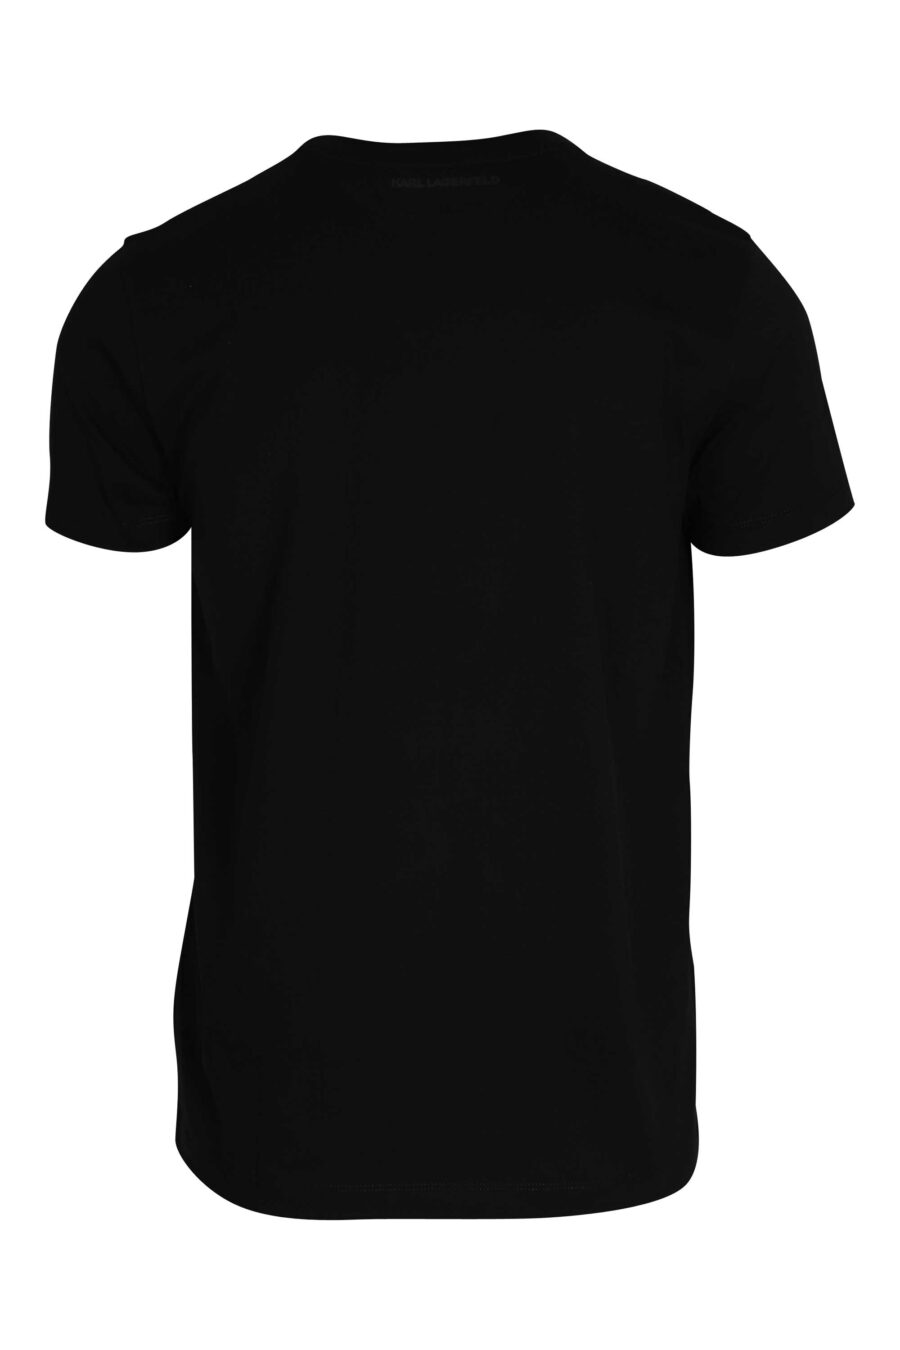 T-shirt preta com maxilogue preto brilhante - 014543001 2